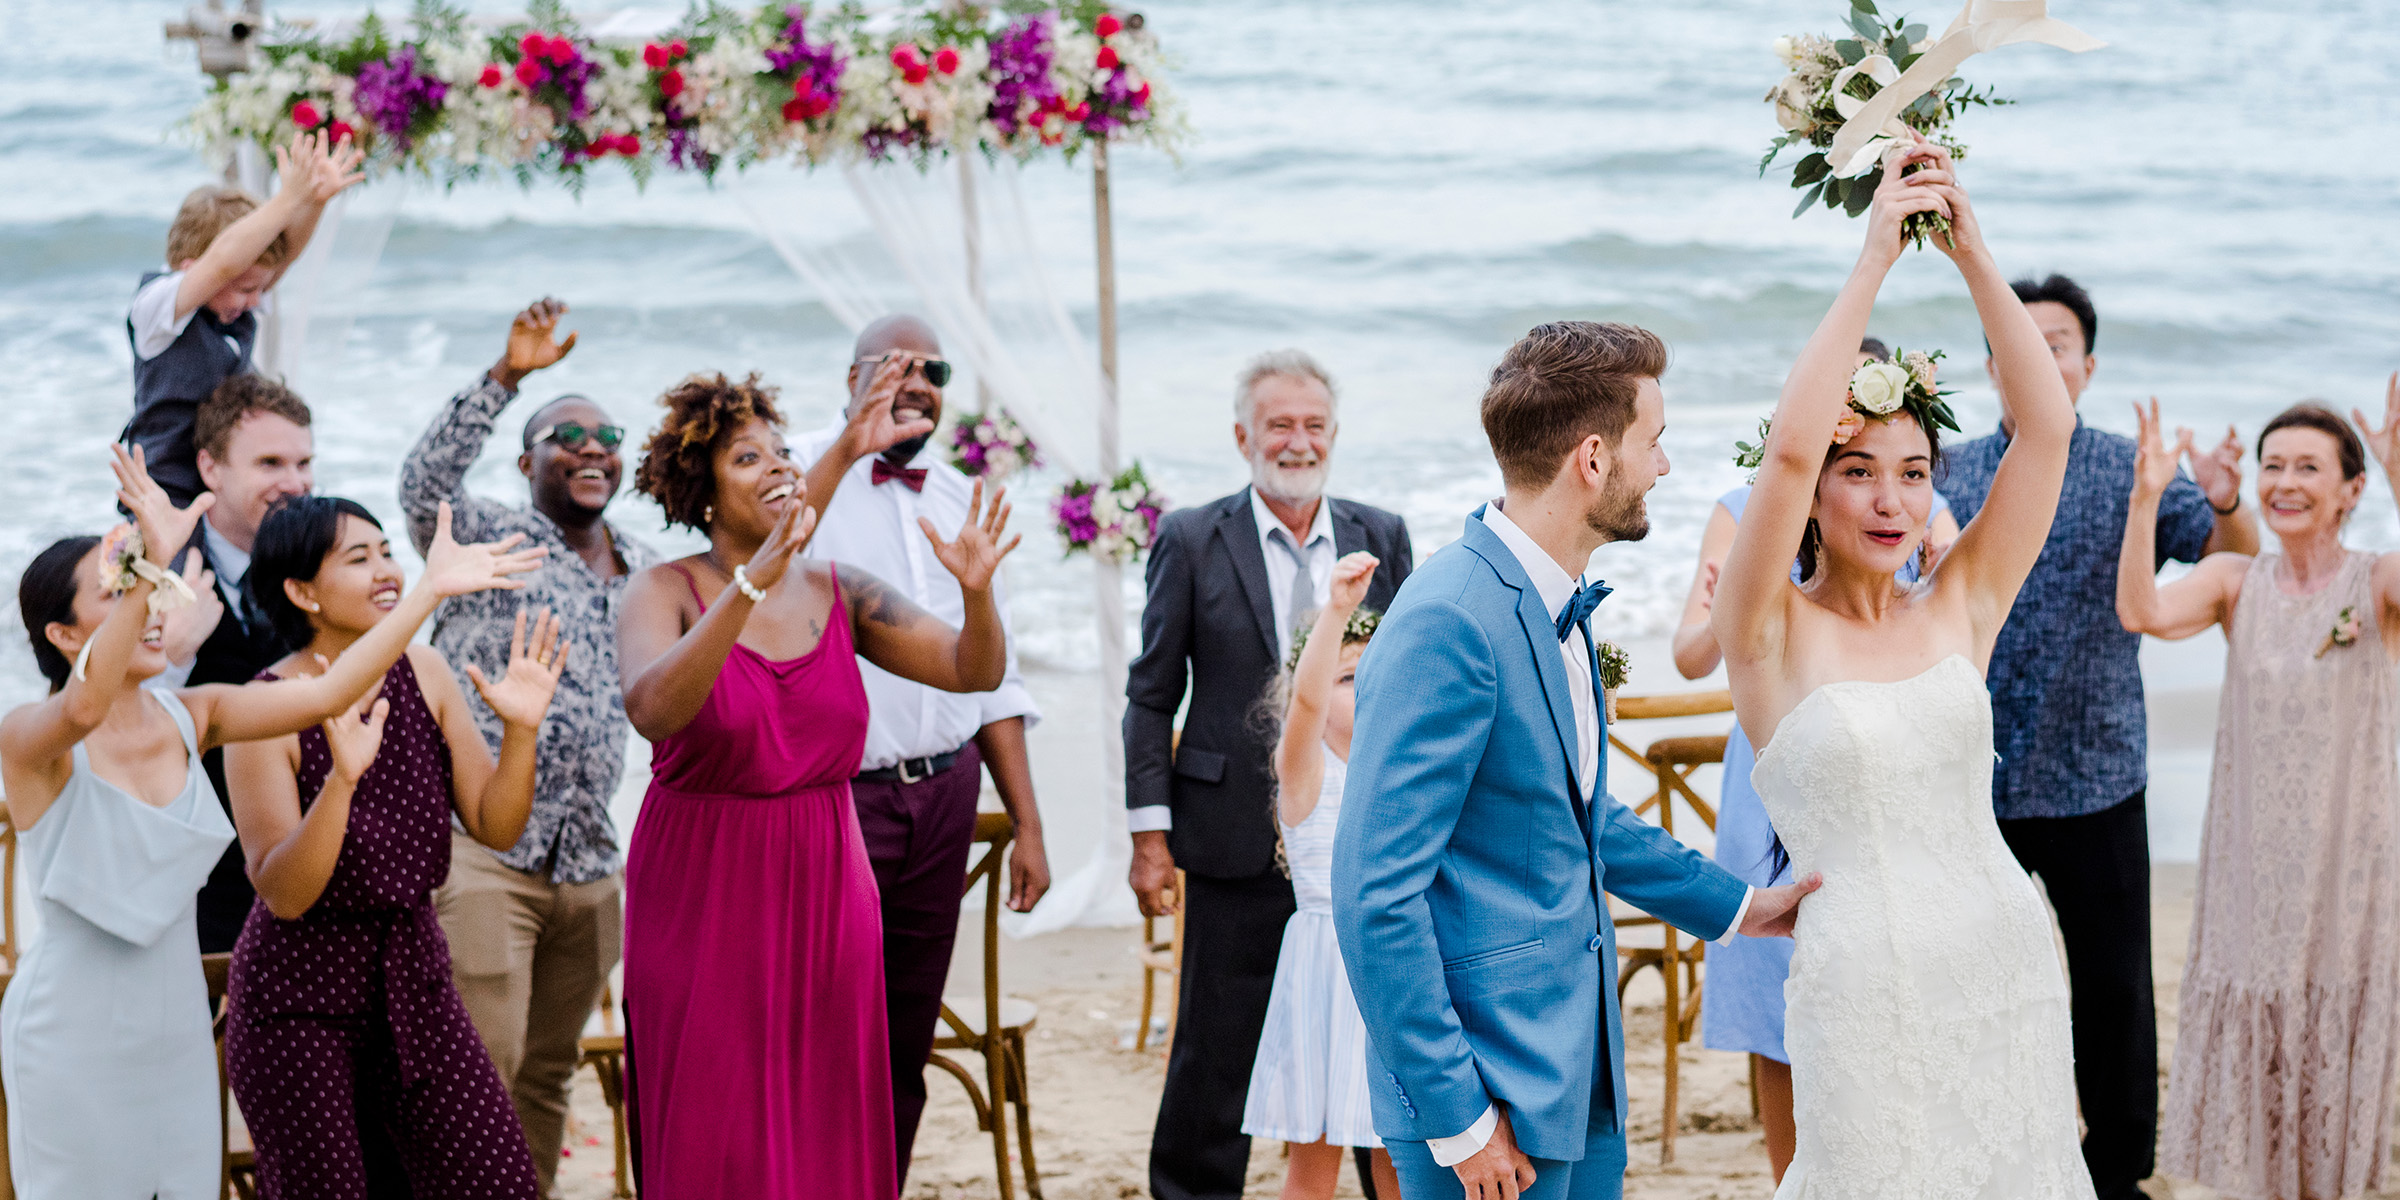 Ceremonia de boda | Fuente: Shutterstock